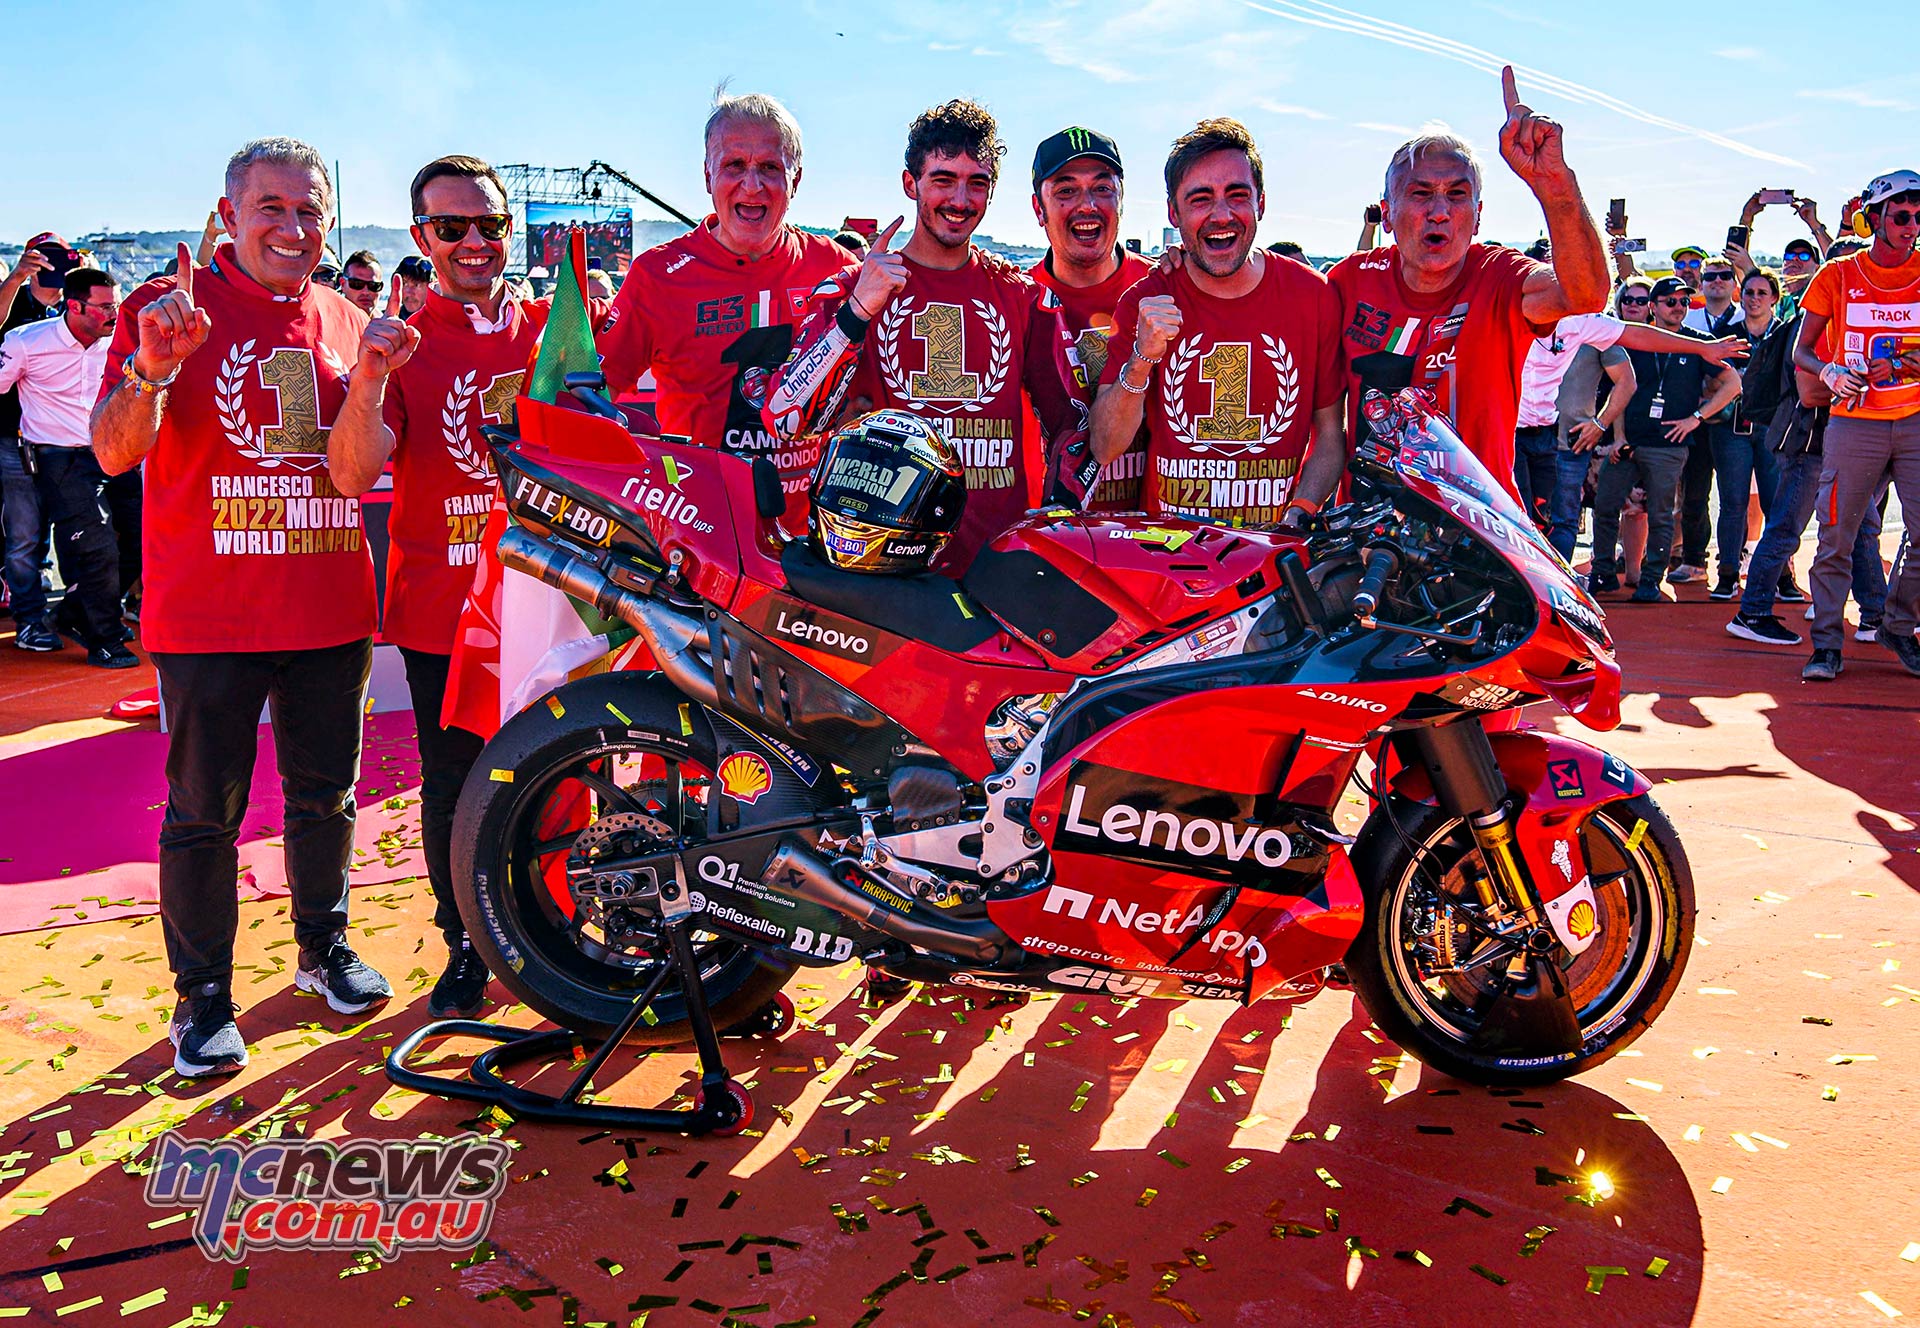 Prepare-se para conhecer o novo campeão de Valência hoje na grande corrida  Moto GP! 🔥🏍 #MotoGP #GPDeValencia #DStv